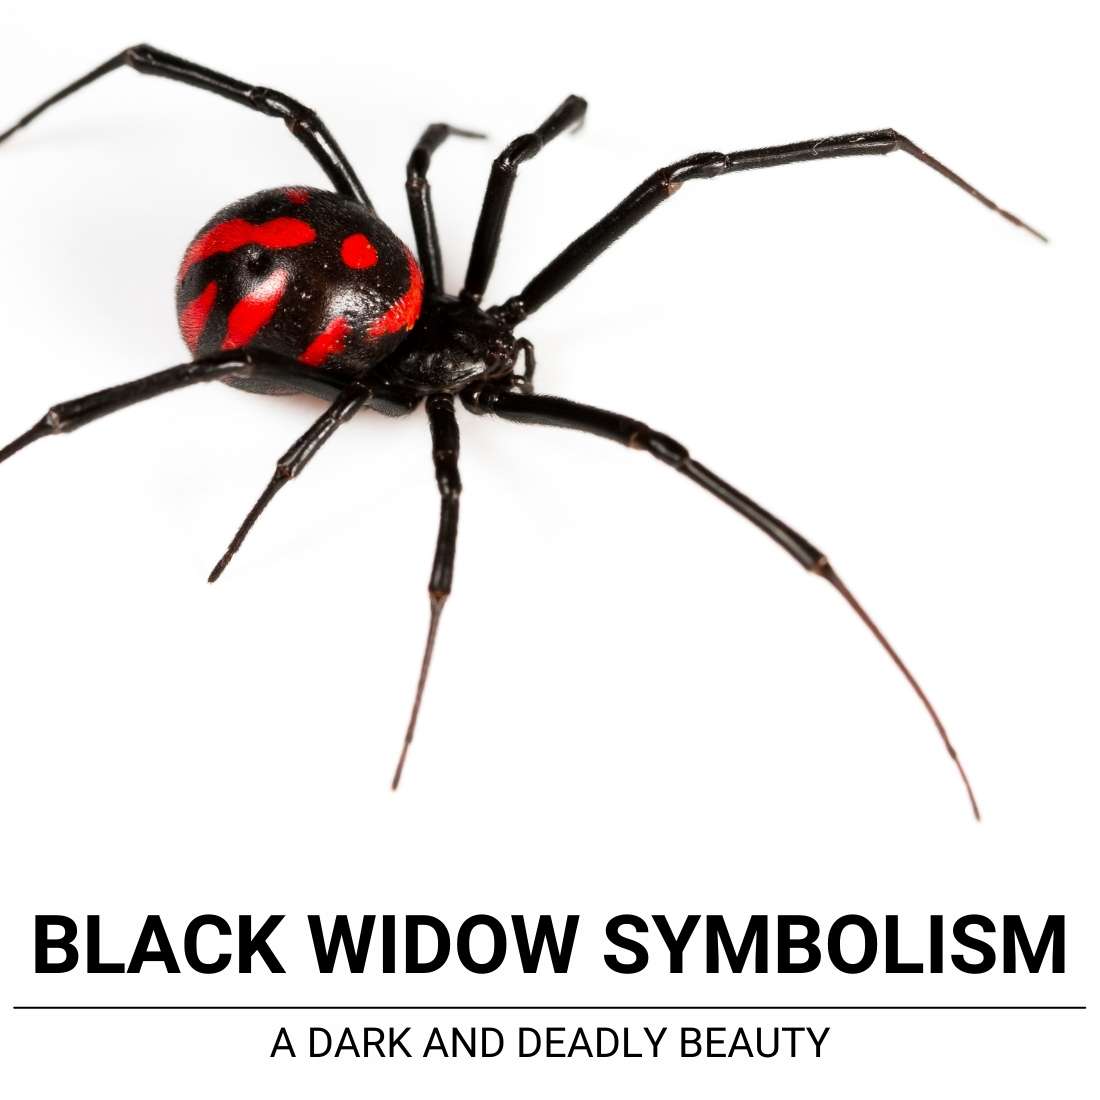 Black Widow symbolism